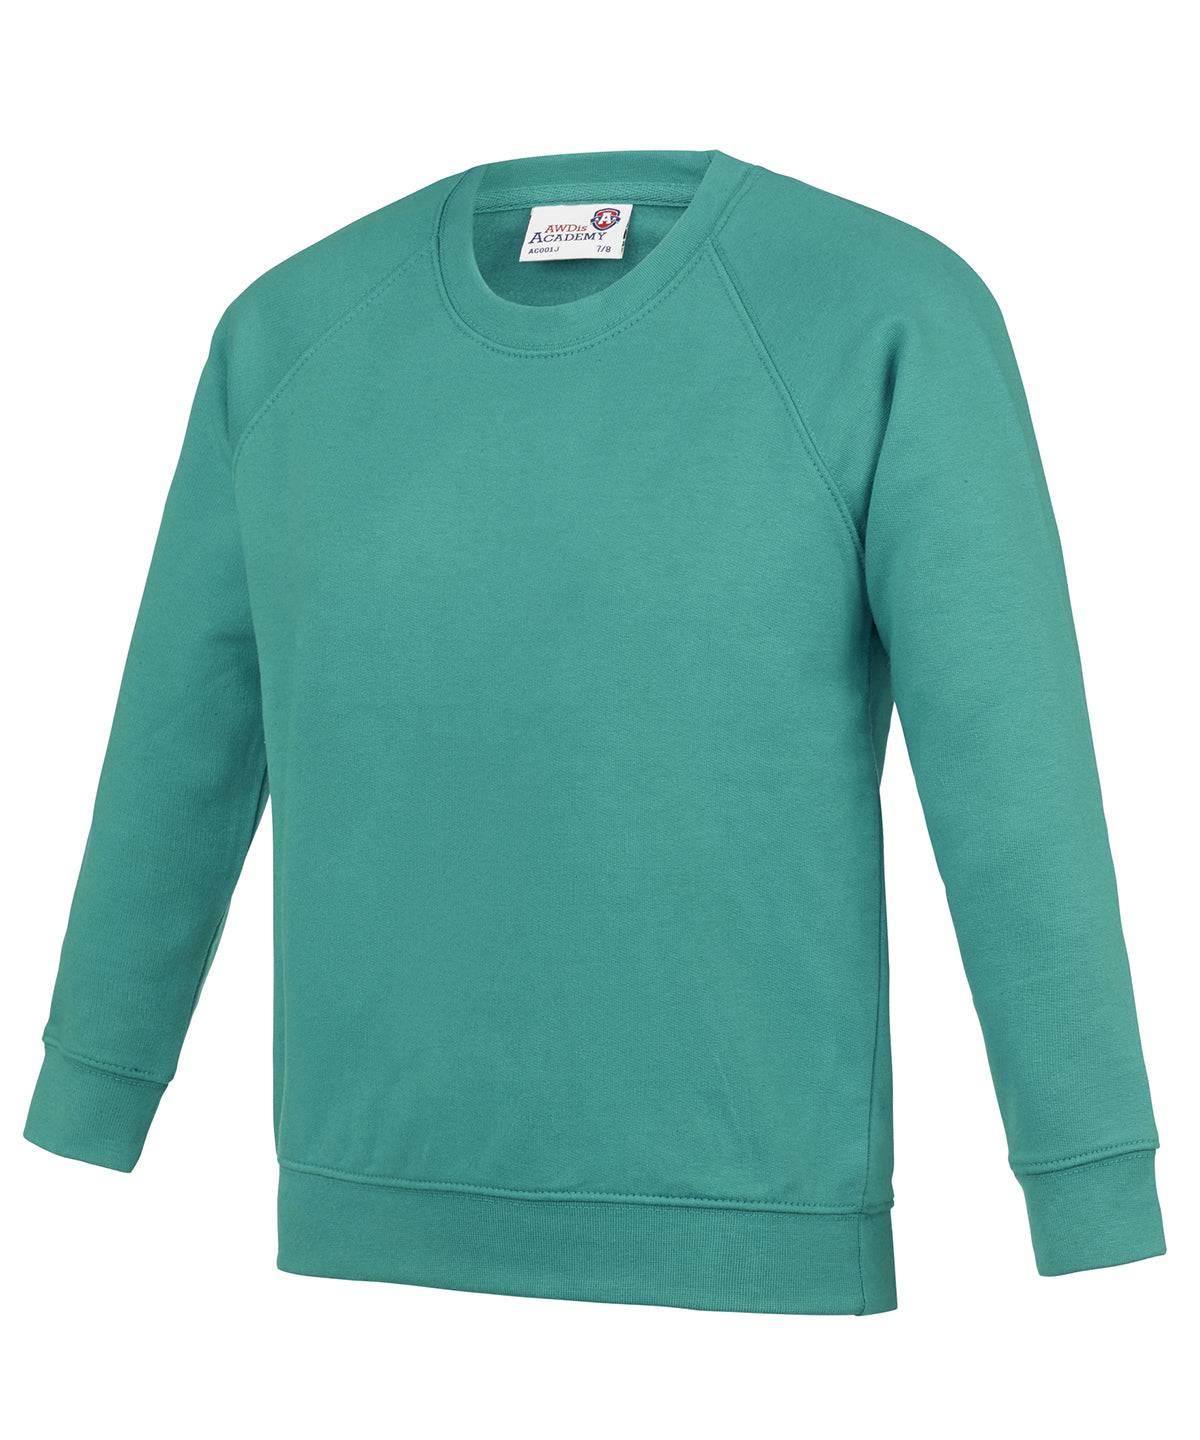 Academy Emerald - Kids Academy raglan sweatshirt